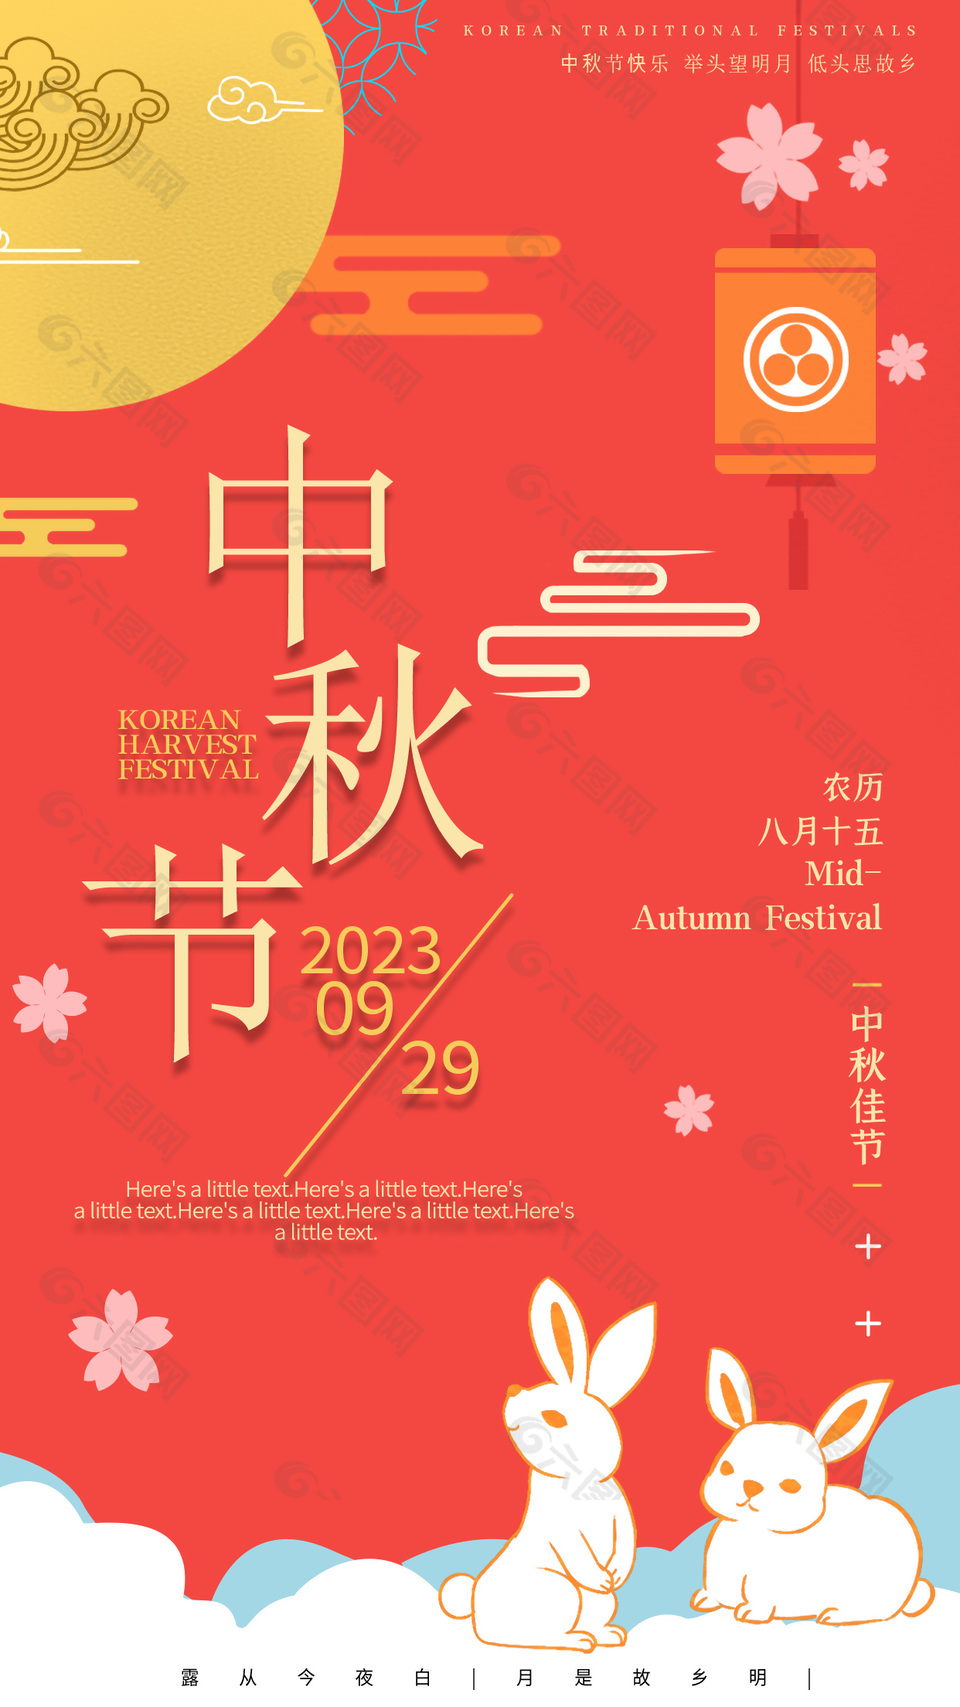 卡通风中秋节快乐传统节日宣传海报下载